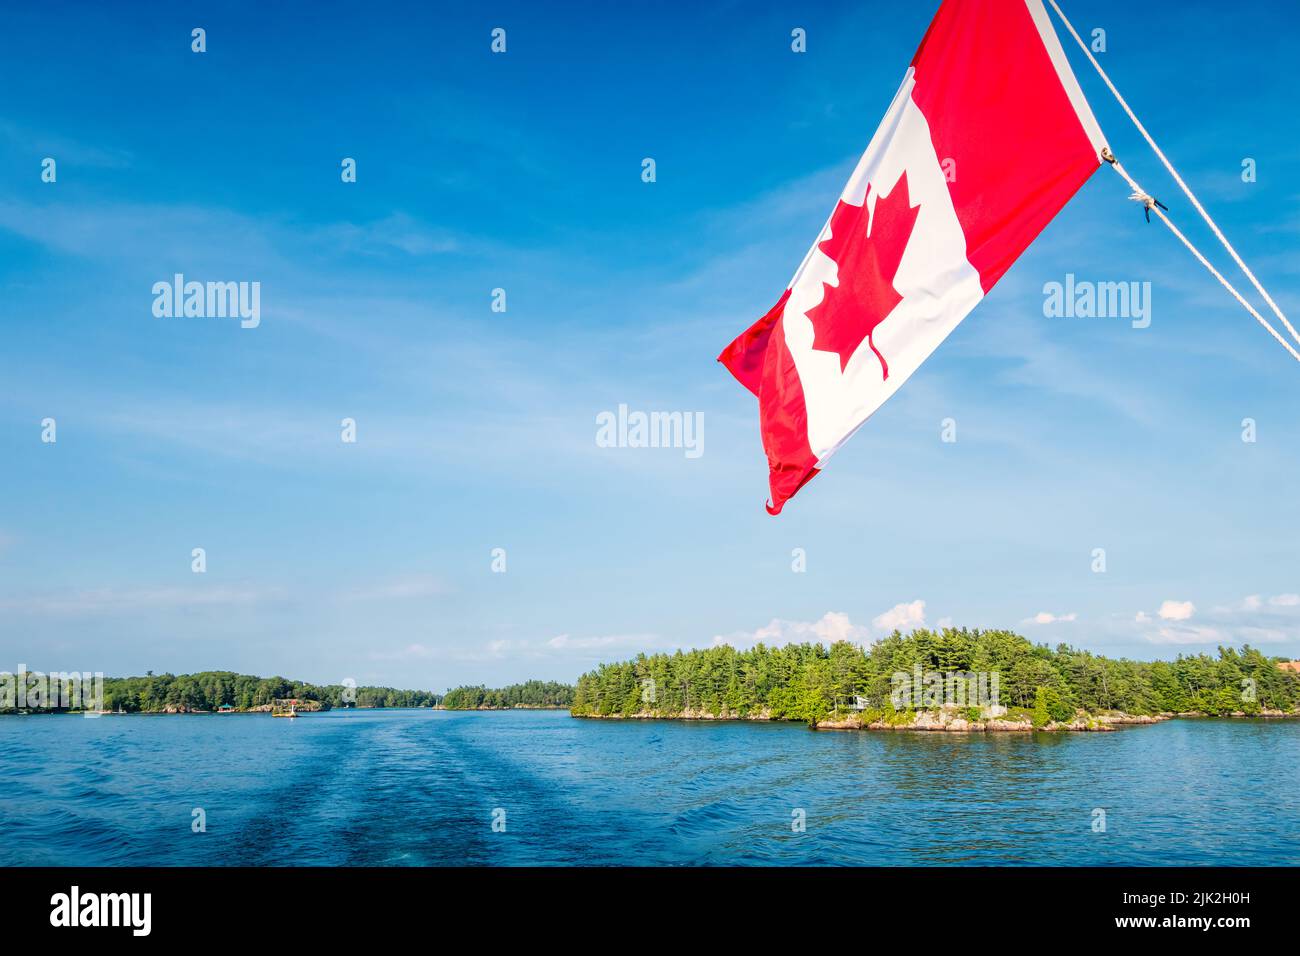 Drapeau canadien sur un bateau de tourisme avec paysage des mille-Îles et le fleuve Saint-Laurent en Ontario, Canada. Banque D'Images